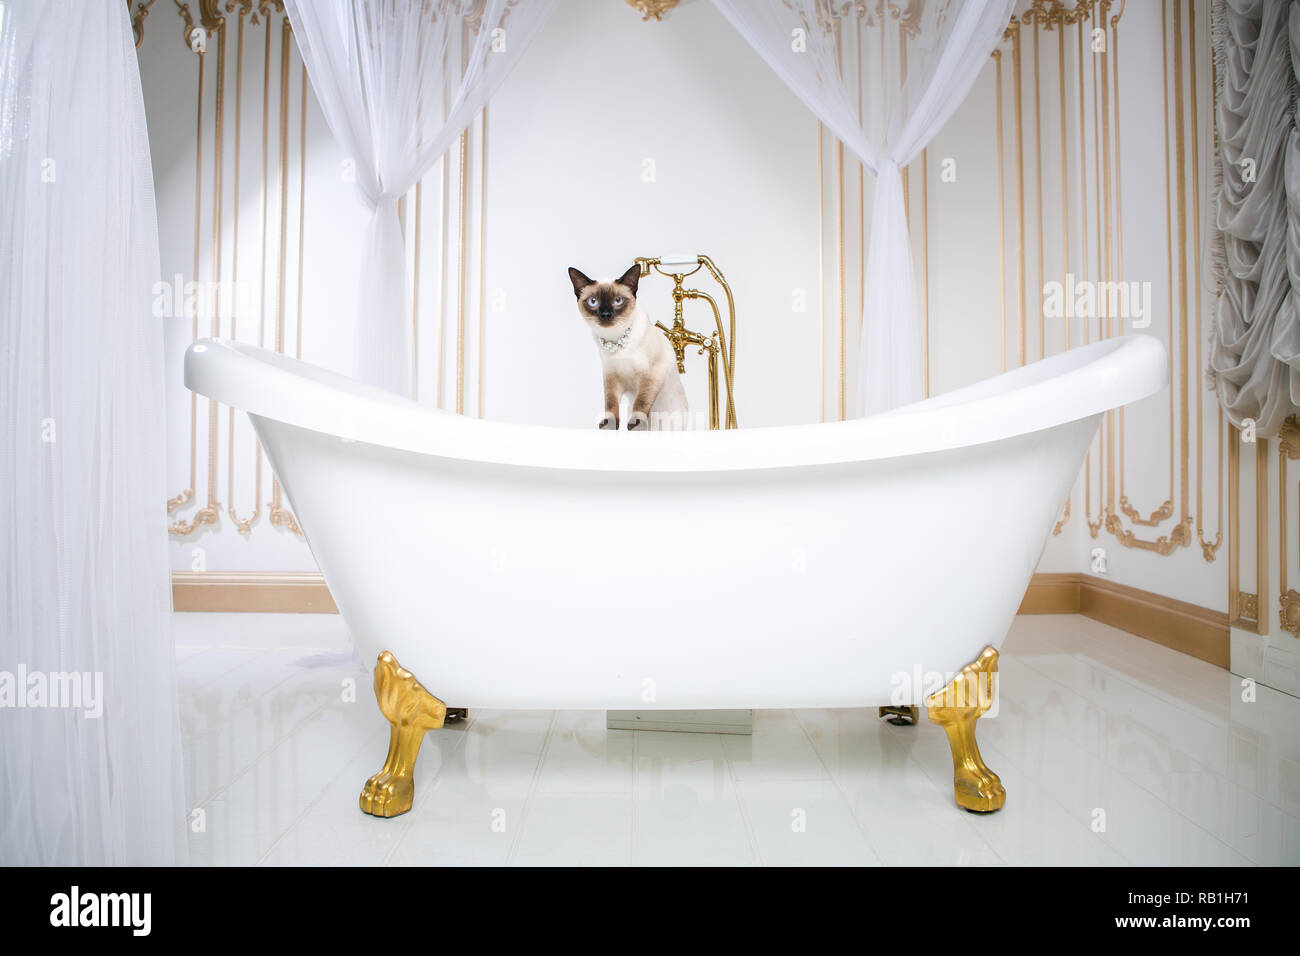 Das Thema ist Luxus und Reichtum. Eine Katze ohne Schwanz des Mekong  Bobtail Rasse in einem retro Badezimmer im Inneren des Barocoo Schloss  Versailles Stockfotografie - Alamy